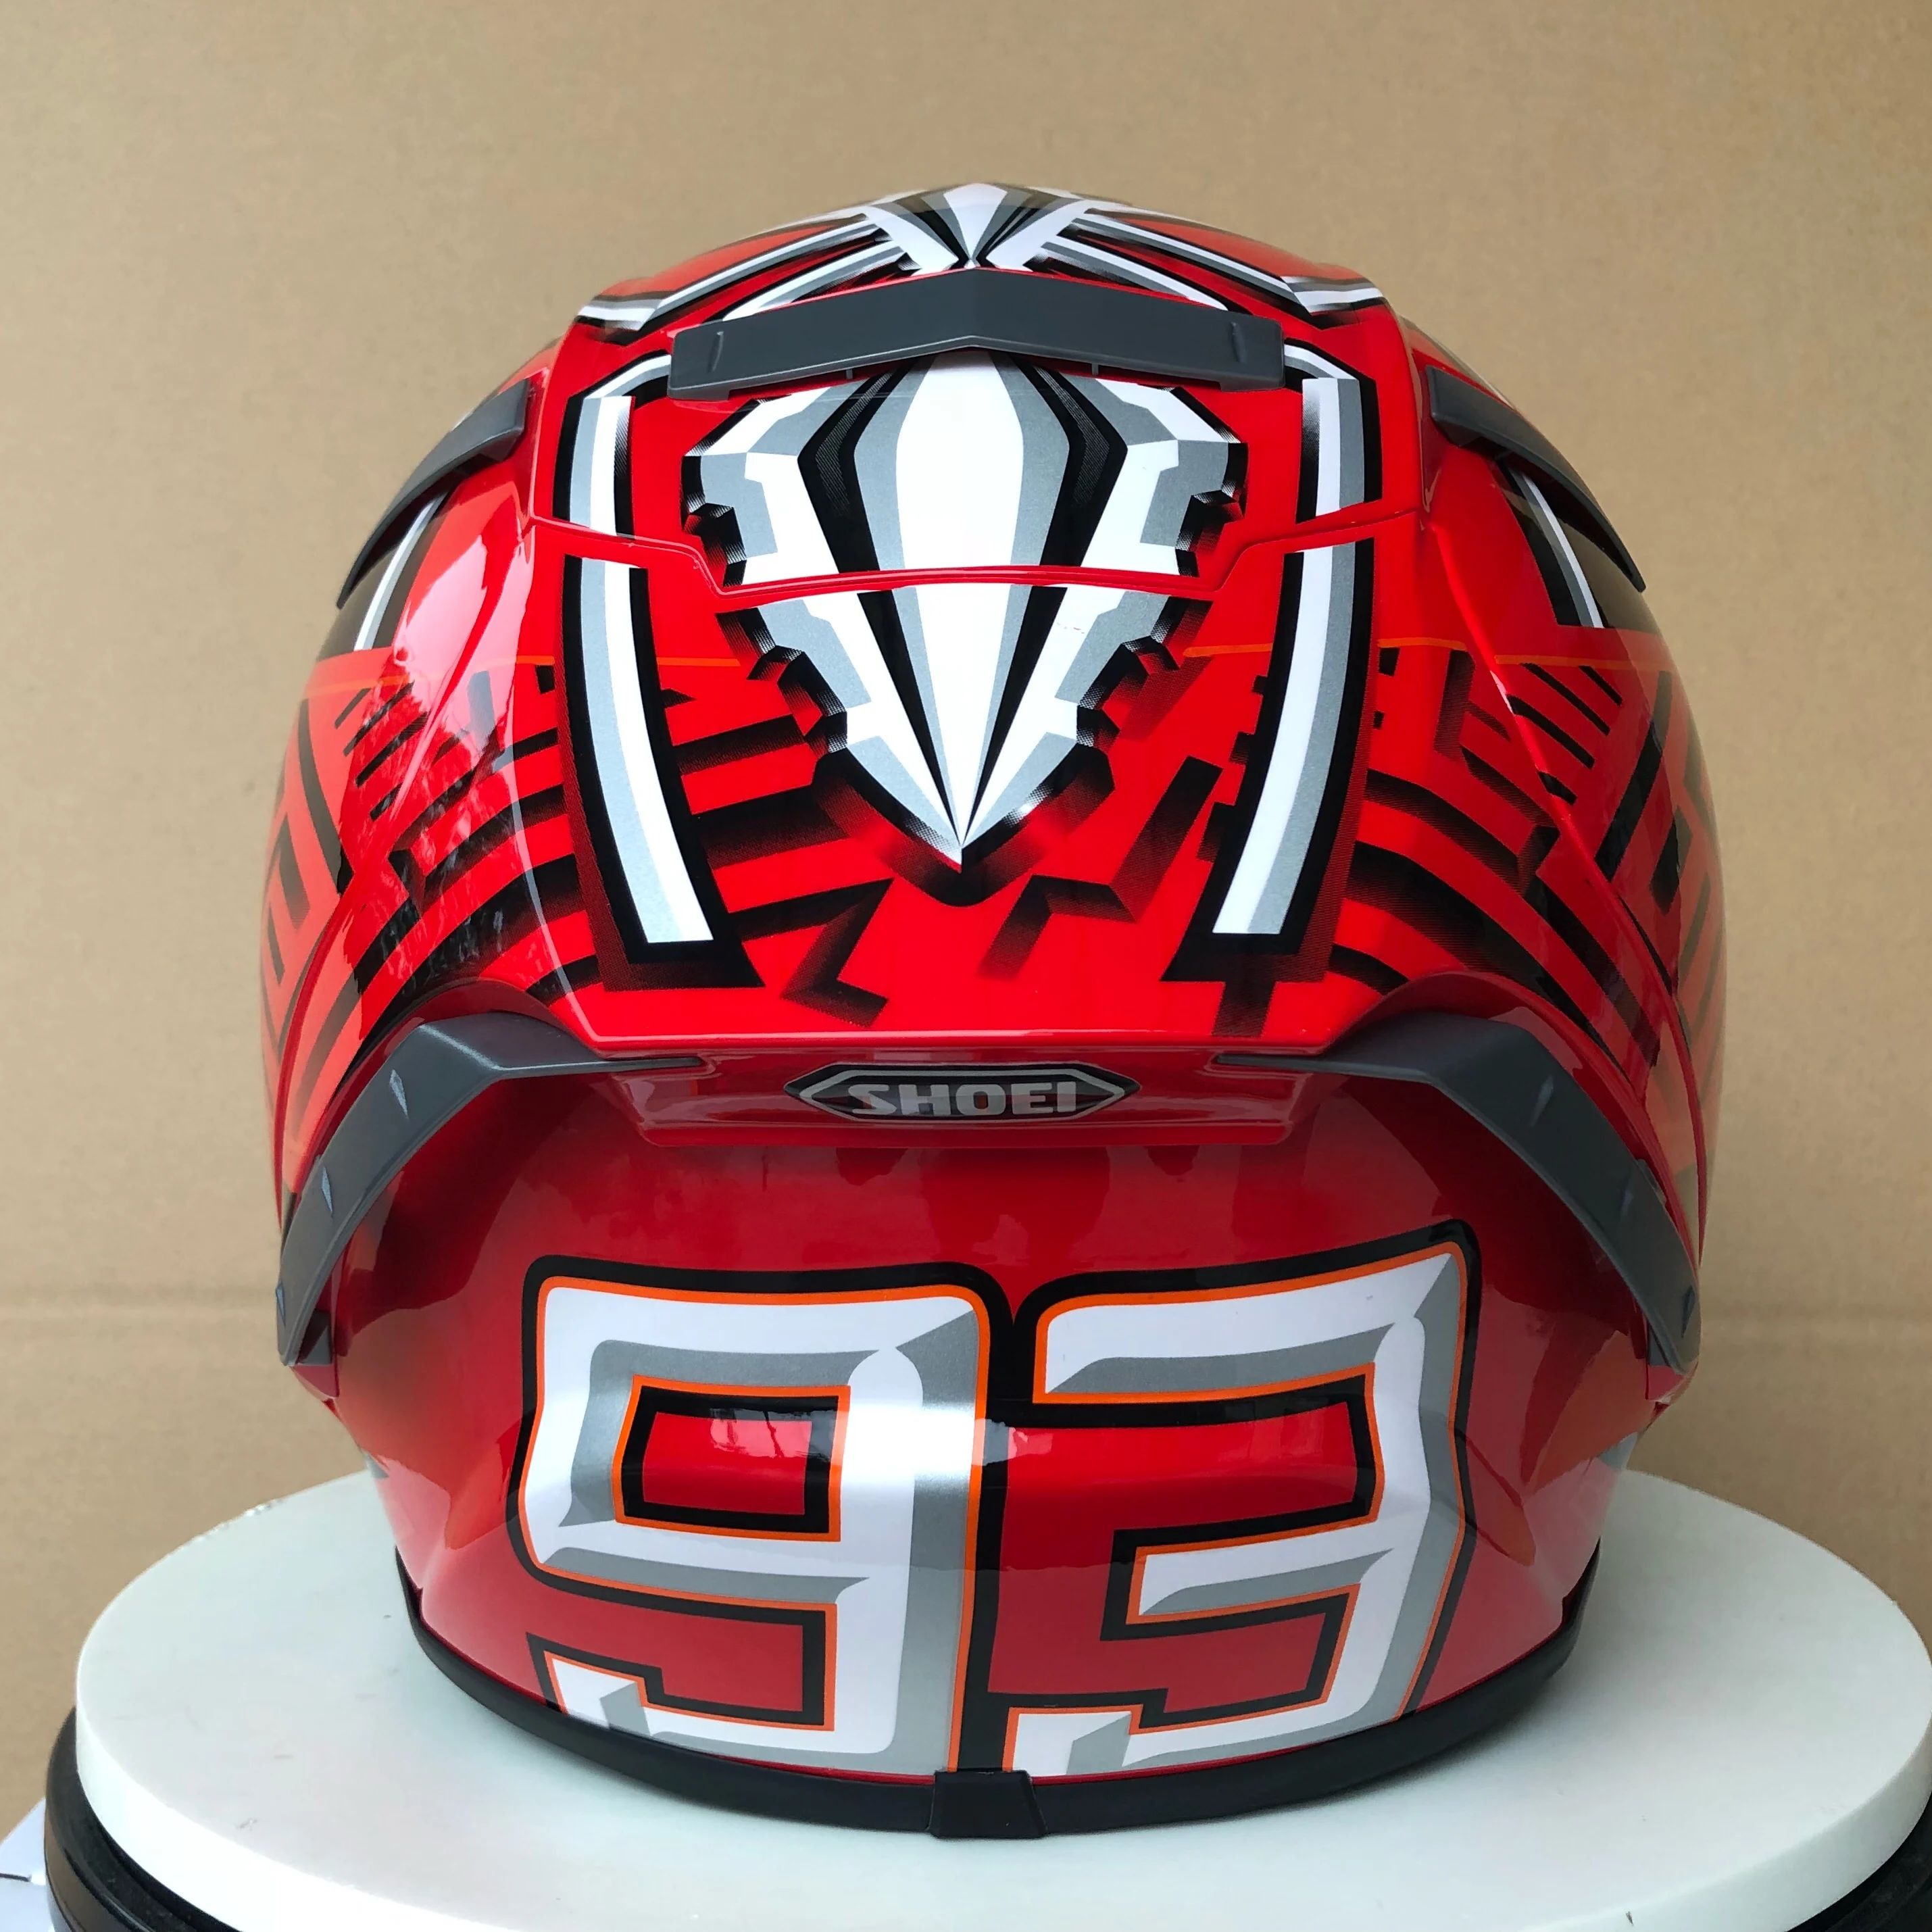 Полнолицевой красный ant X14 93 marquez мотоциклетный шлем для мужчин для езды на автомобиле для мотокросса мотоциклетный шлем(реплика-шлем